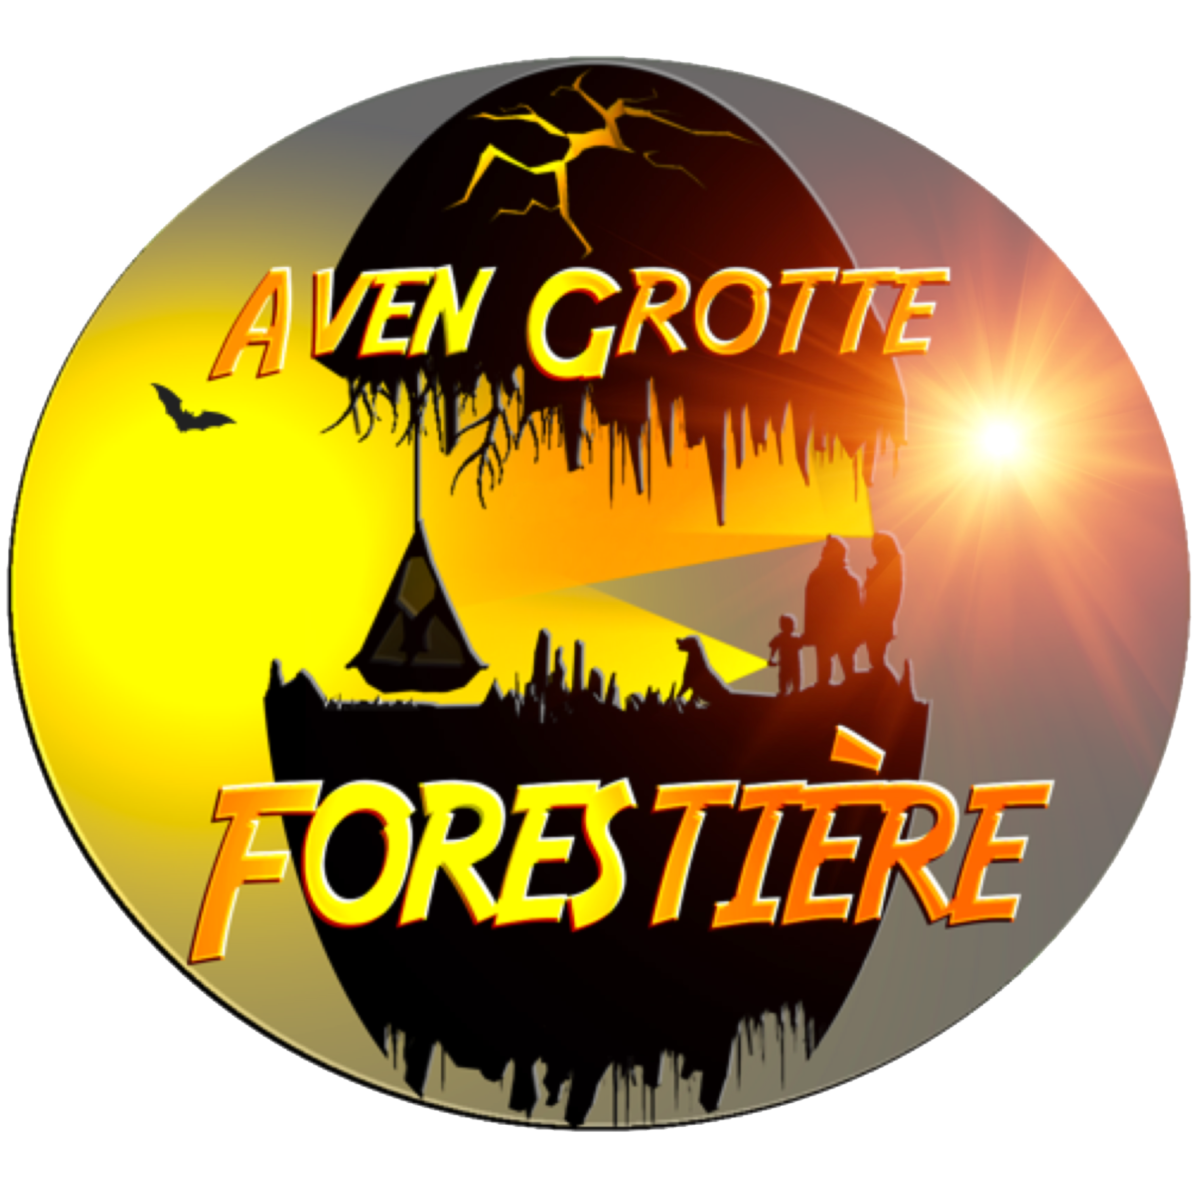 Grotte Ardèche - Grotte Aven Forestière